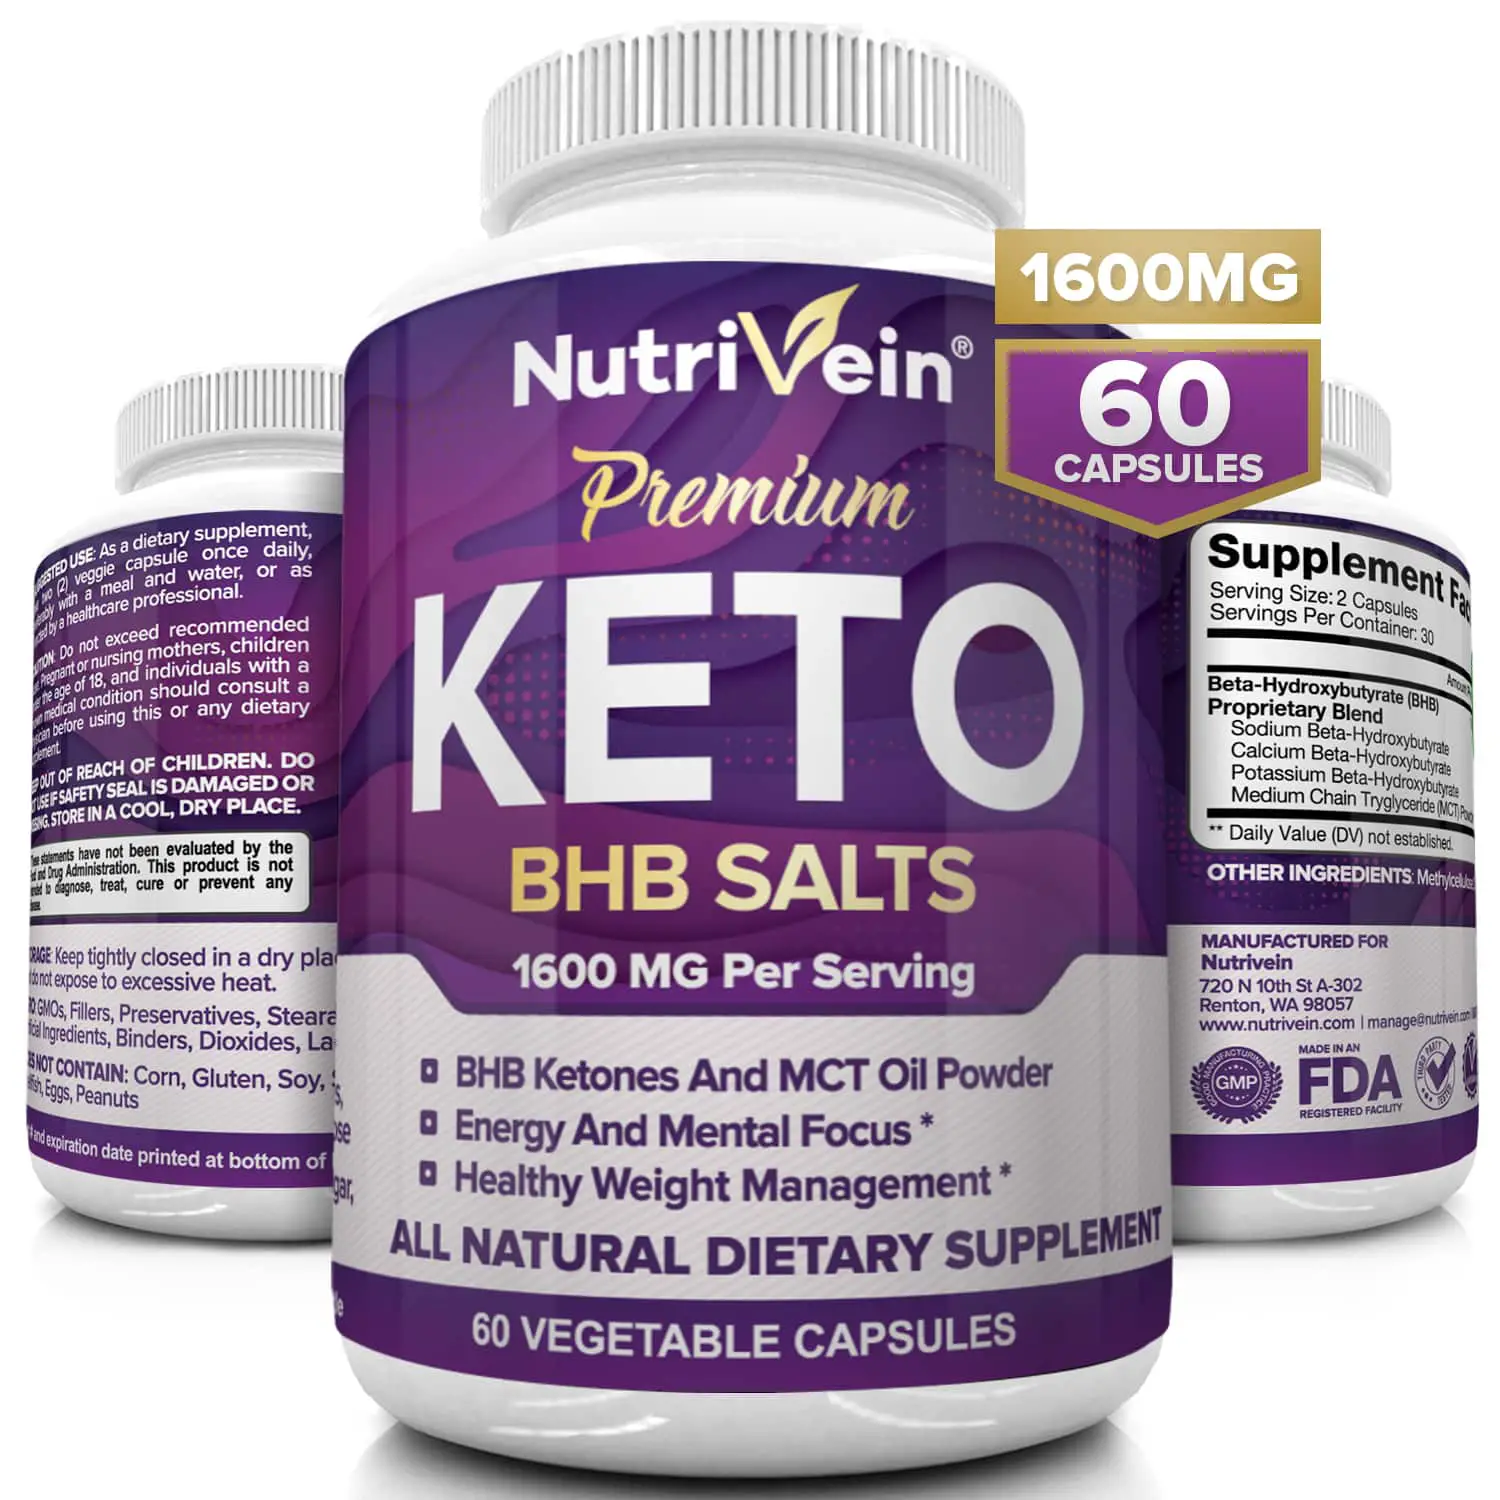 Nutrivein Premium Keto Weight Loss Supplement, 1600 mg, 60 Capsules ...